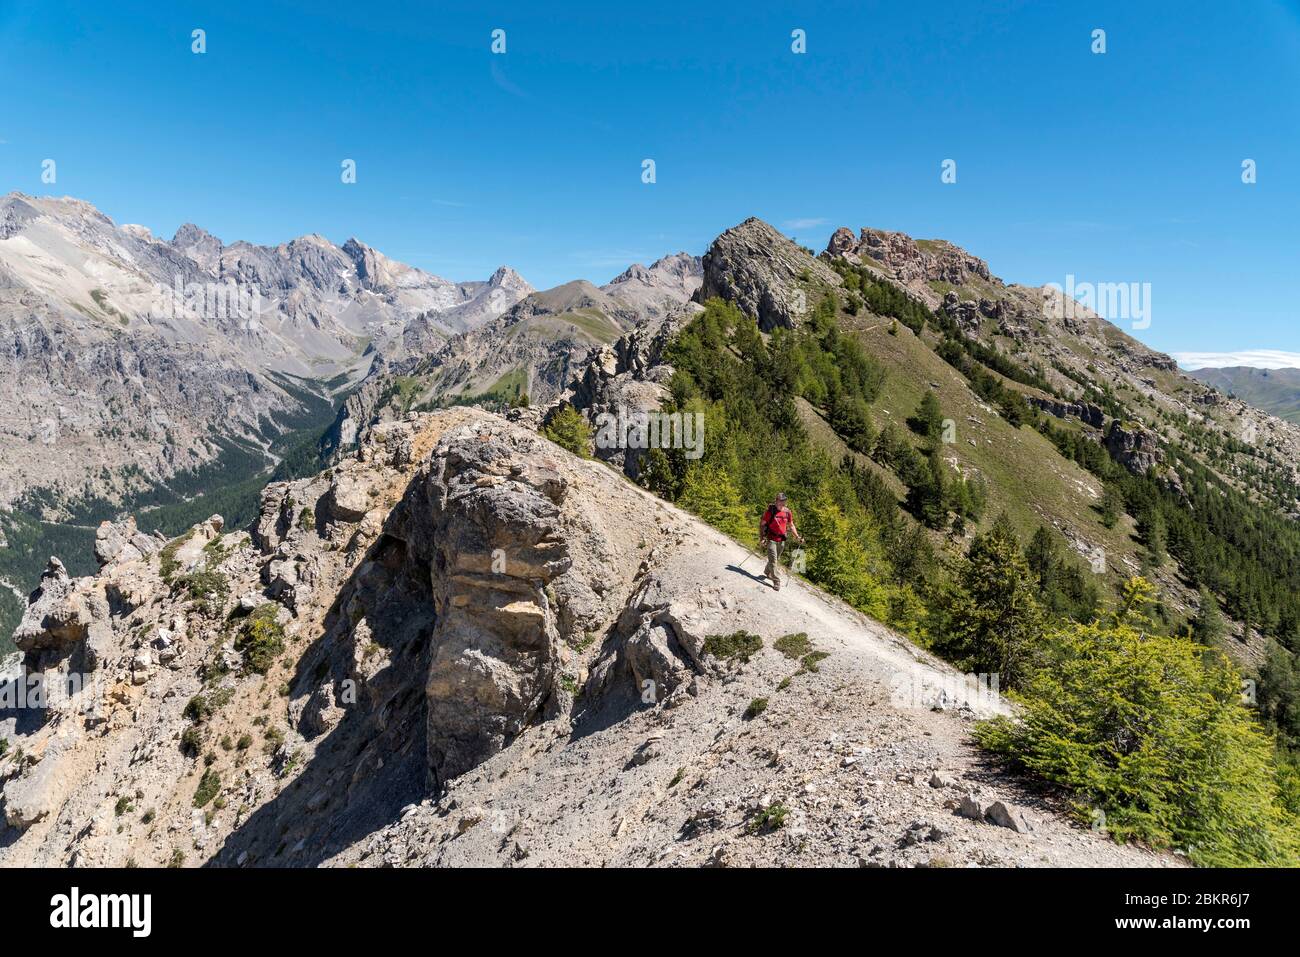 France, Hautes-Alpes (05), Queyras Regional Nature Park, Val d'Escreins Nature Reserve, Guillestre, Col de la Coulette, hiker on the Vars ridge between the Col de la Coulette (2362m) and the Col de la Scie (2362m) Stock Photo